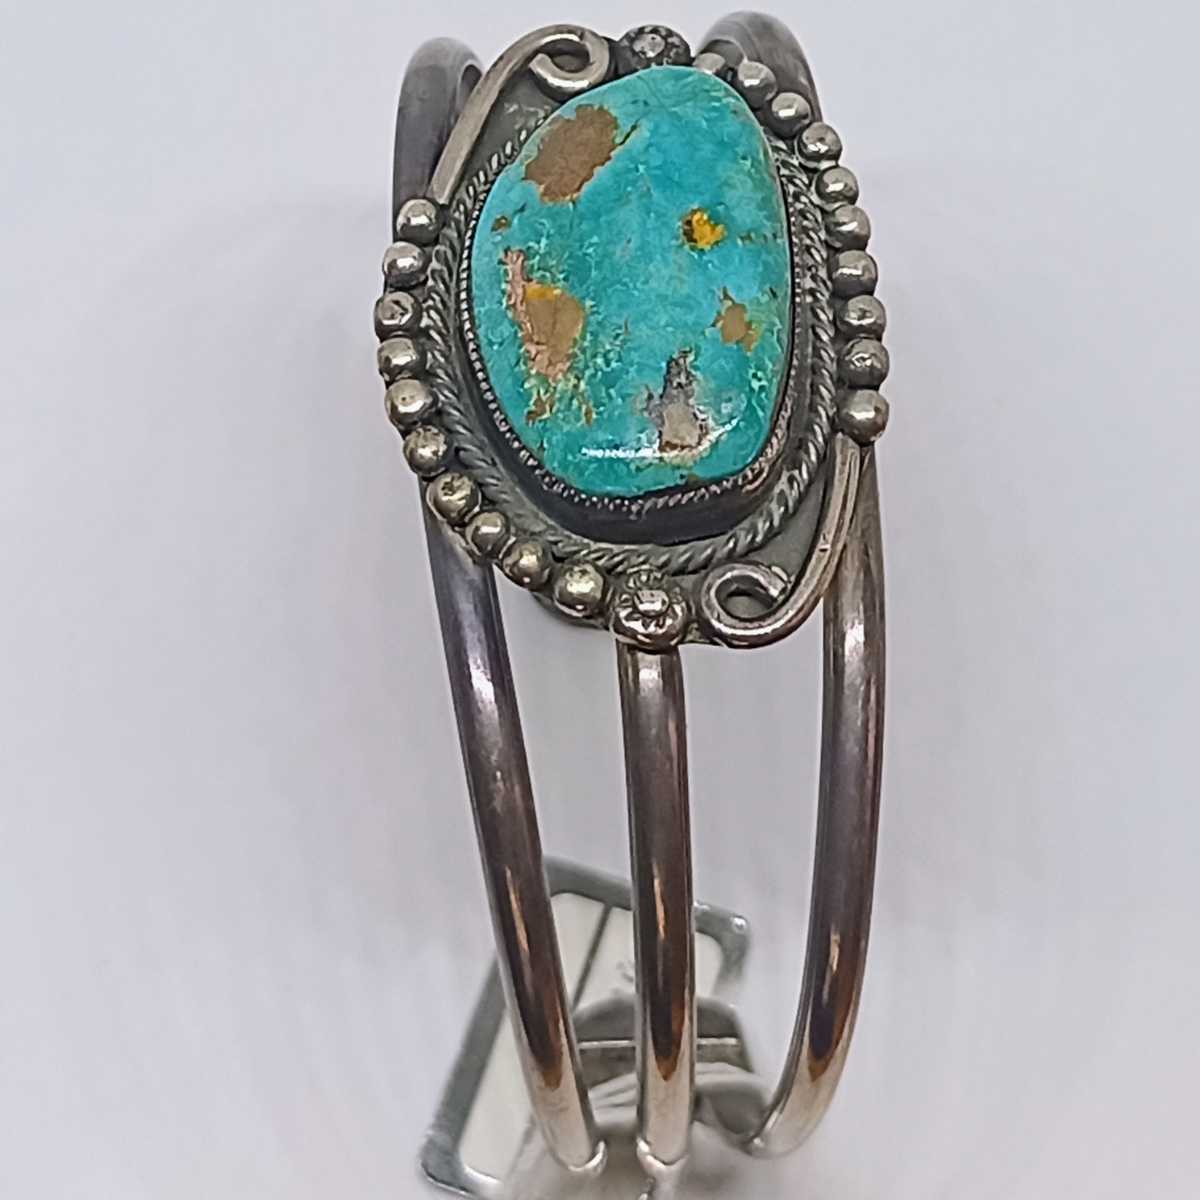 USA индеец ювелирные изделия TurquoiseOLDDEADPAWN бирюза бирюзовый серебряный Navajo автор Navajo браслет браслет ширина 64 длина 38 толщина 10mm36g серебряный 